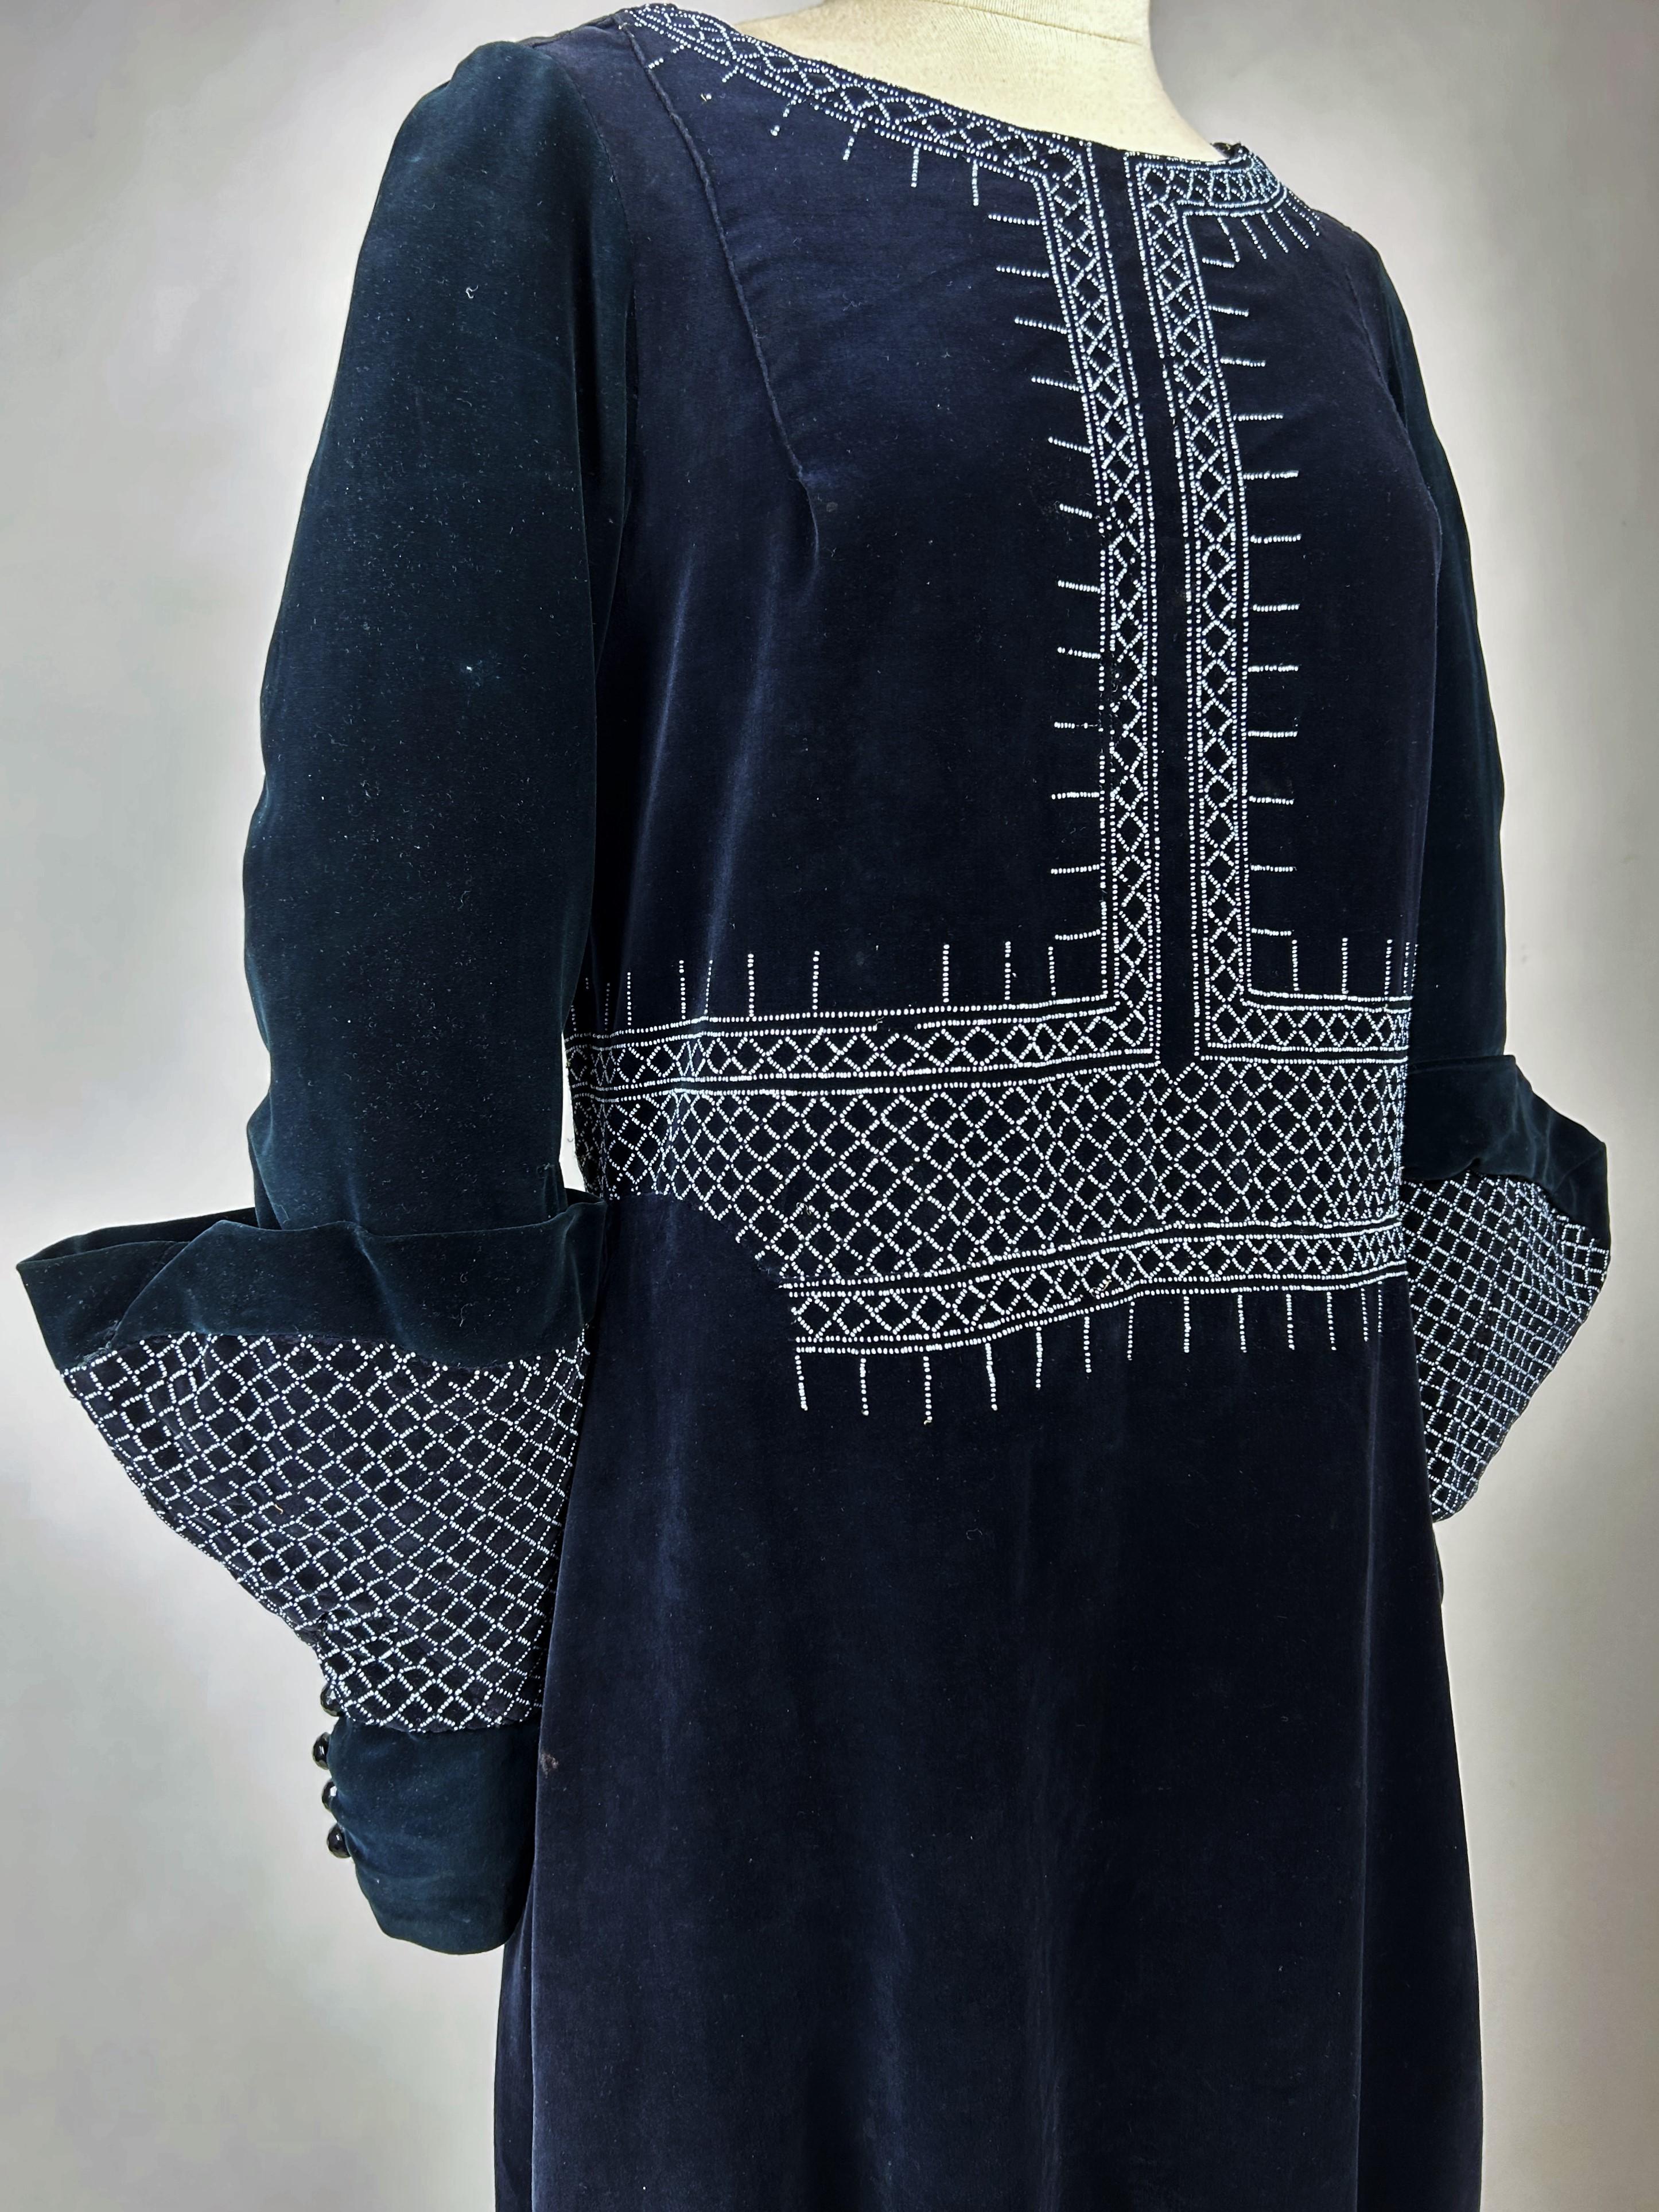 CIRCA 1925-1930

Frankreich

Nicht identifiziertes Couture-Tageskleid aus marineblauem Samt und weißem Glasperlensiebdruck aus der Zeit des Art déco. Ein Sac Kleid Schnitt, ovaler Ausschnitt und lange Ärmel mit Musketiermanschetten. Sehr raffinierte